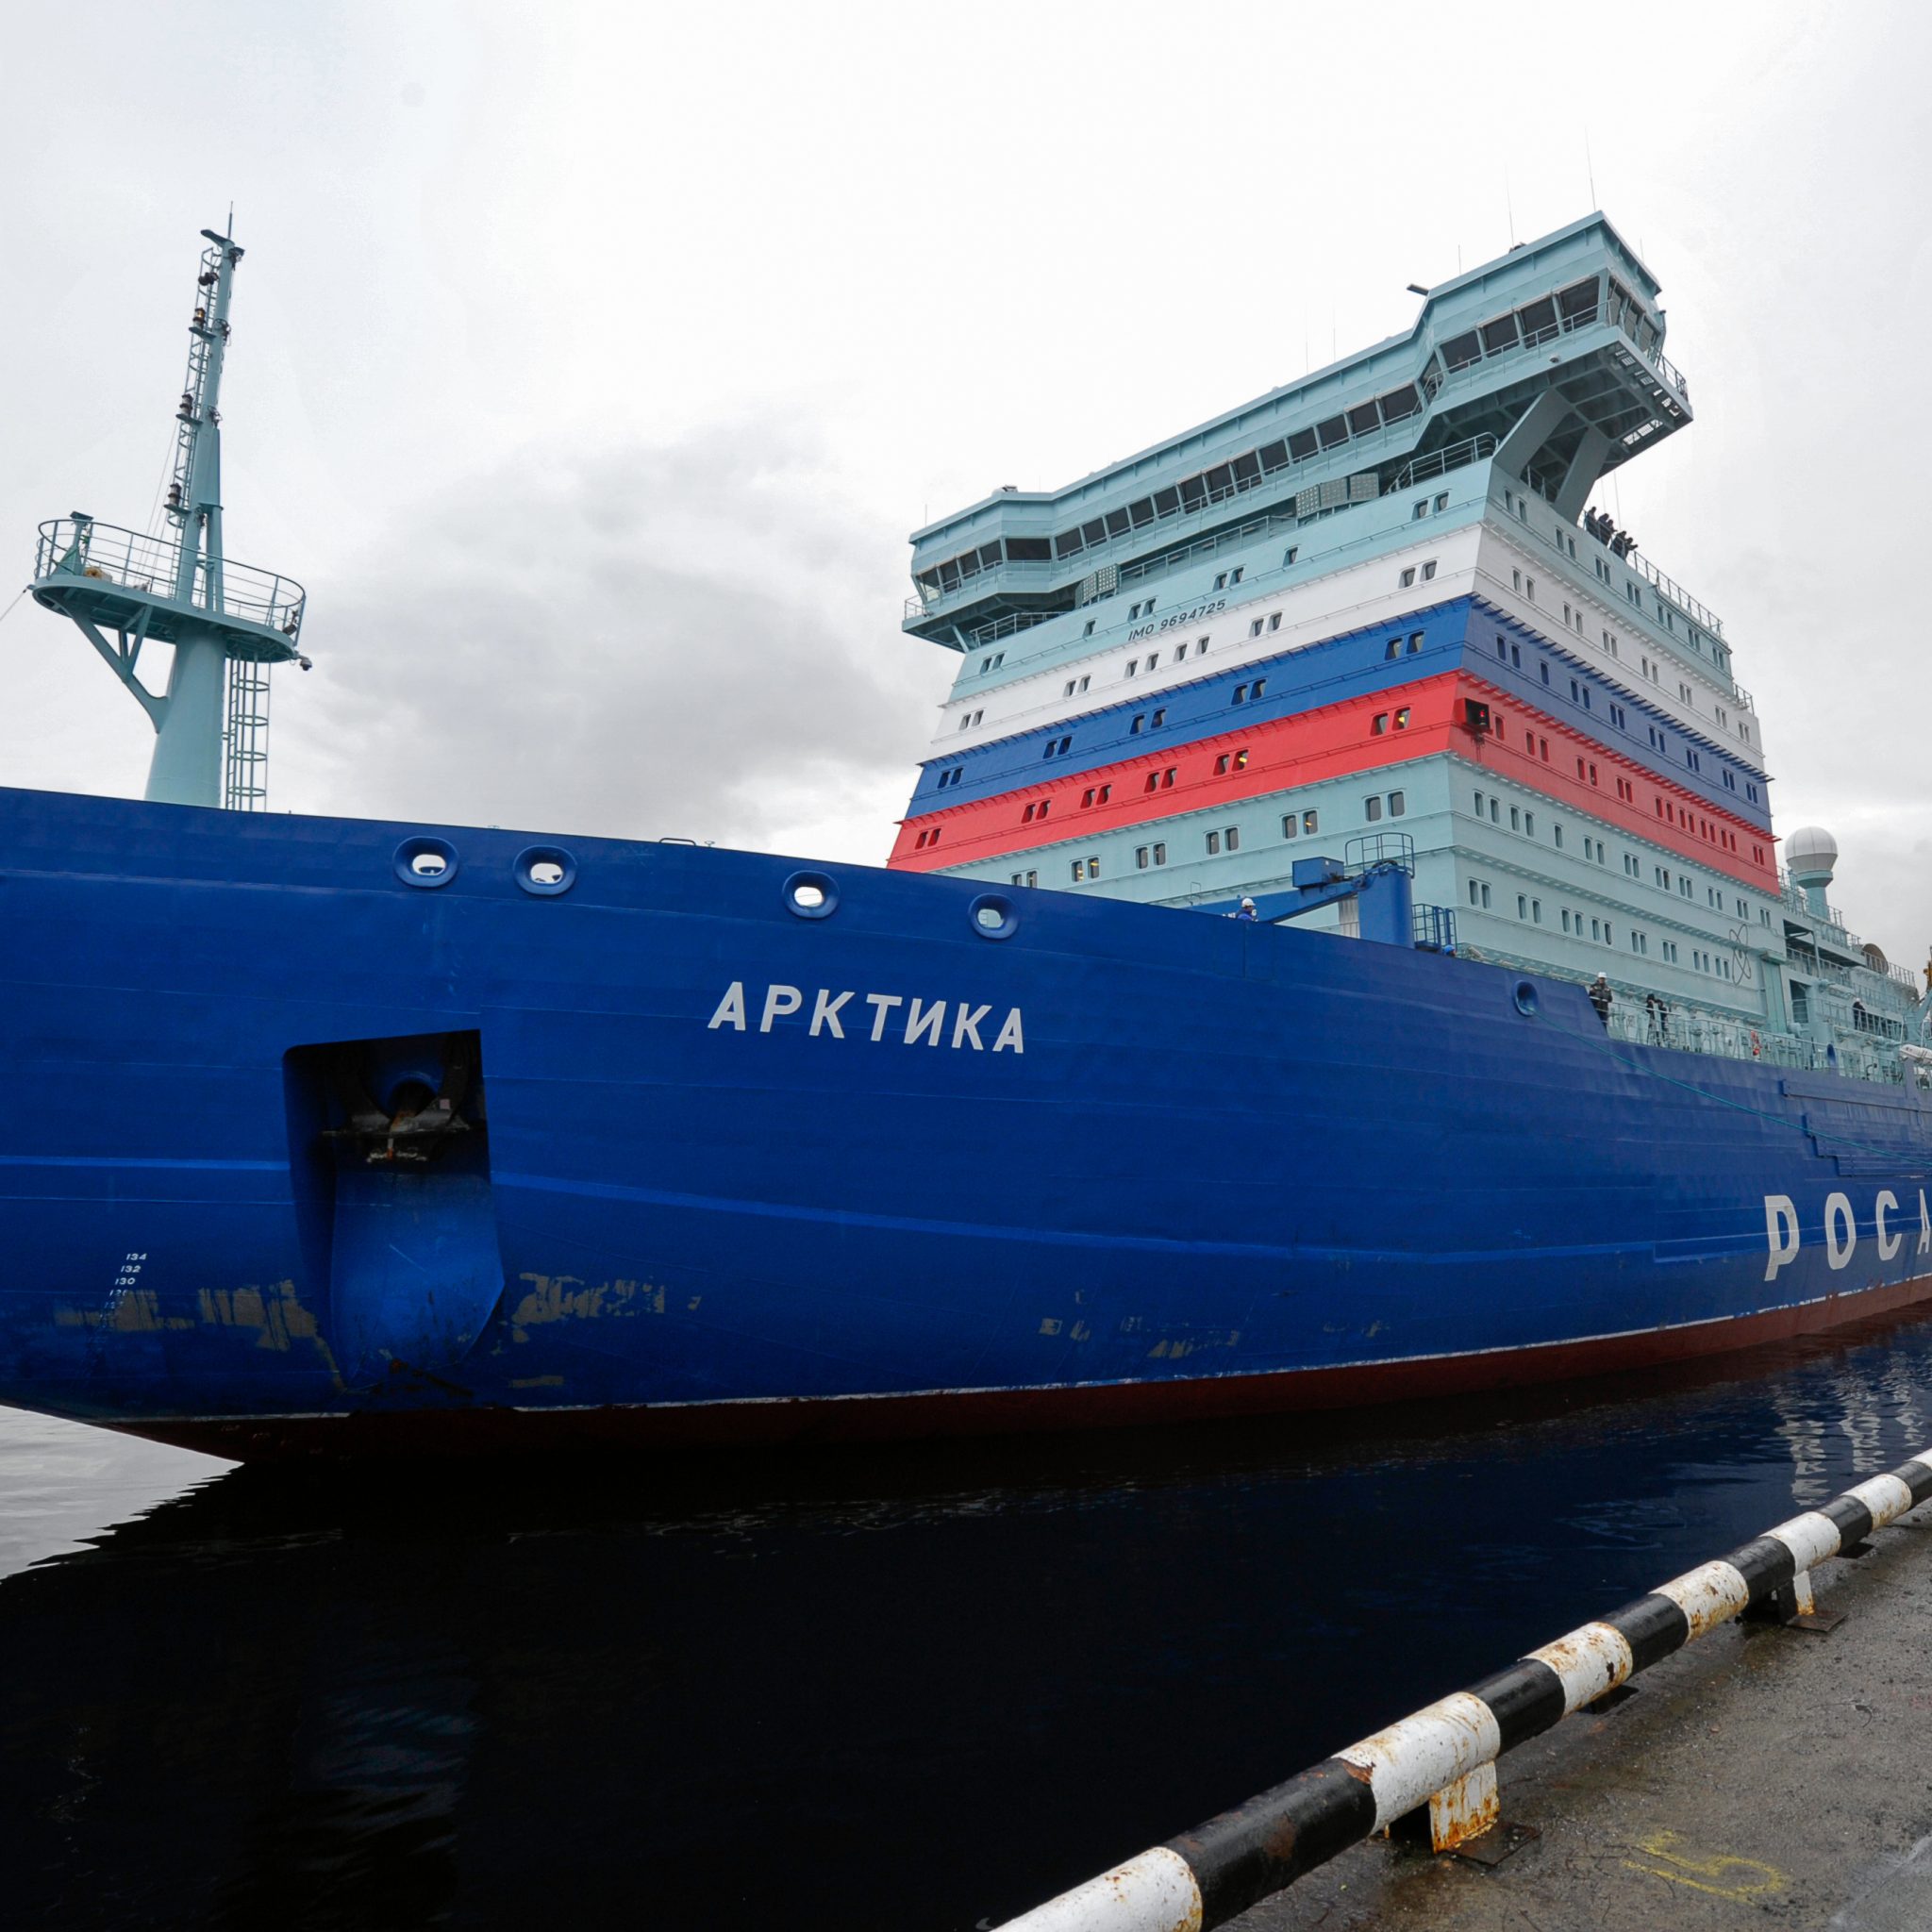 De Arktika werd in 2016 te water gelaten en in 2020 opgeleverd. (Foto ANP)